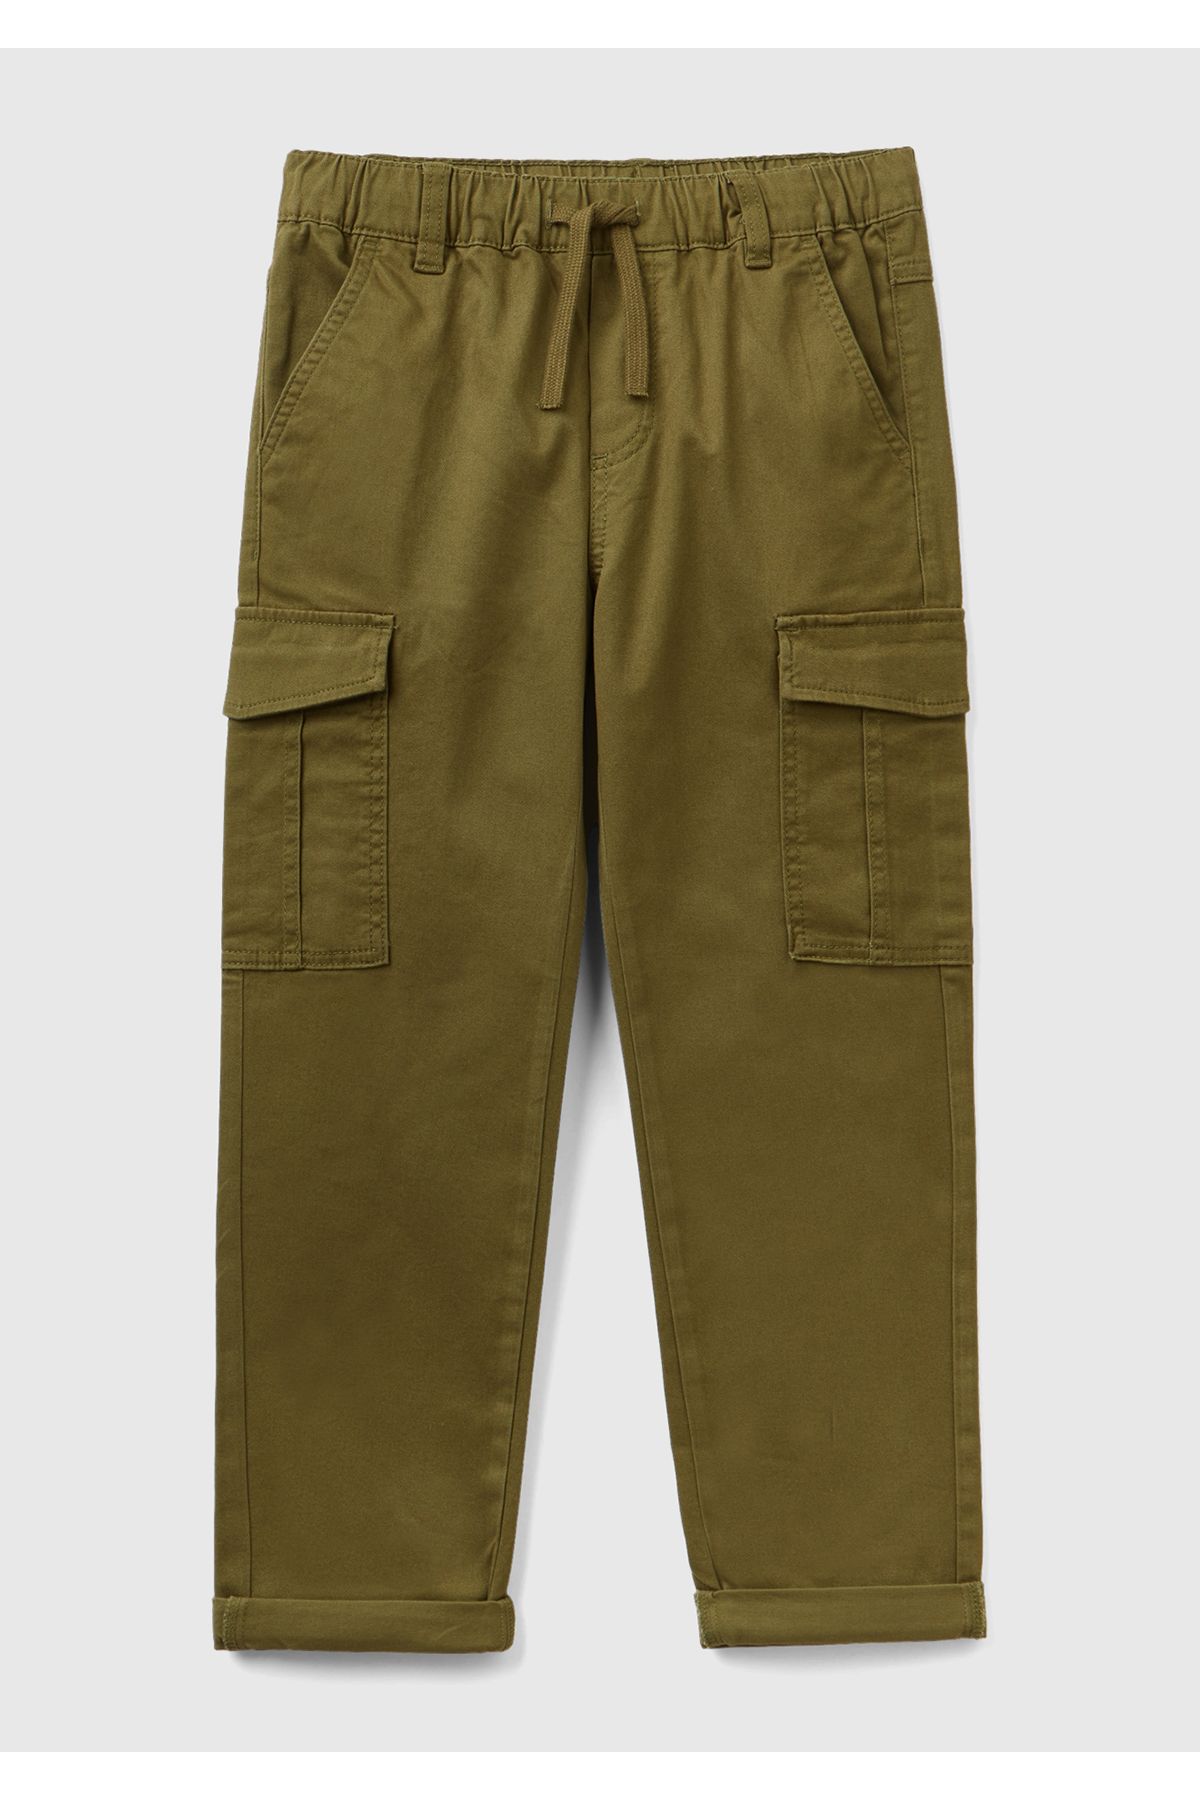 United Colors of Benetton Erkek Çocuk Haki Yanlarında Cep Detaylı Pantolon